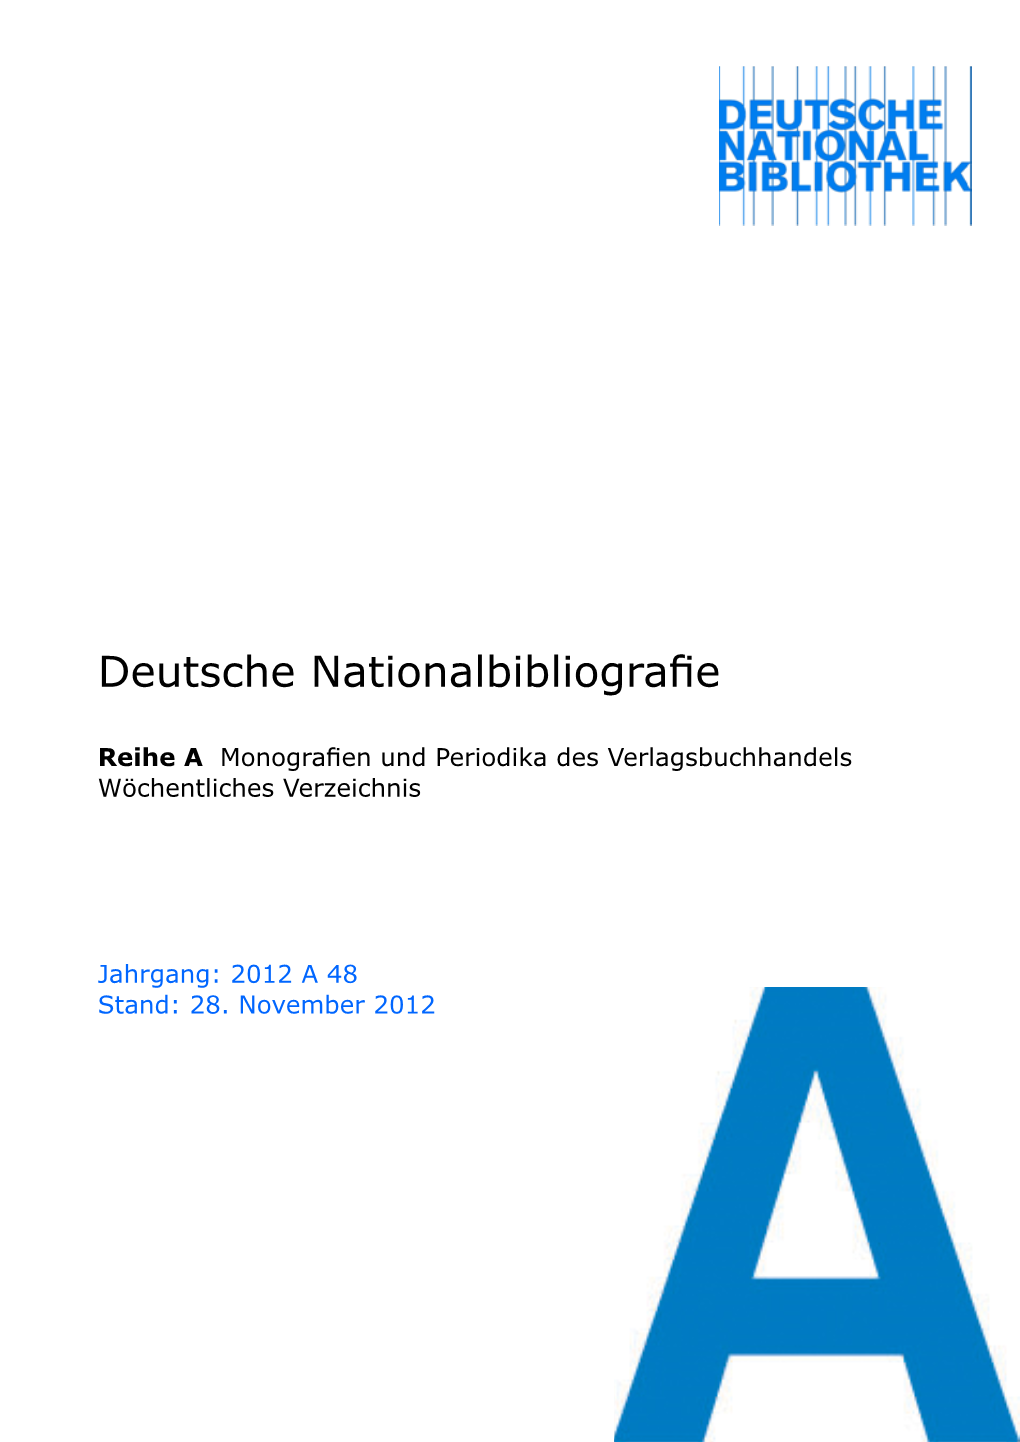 Deutsche Nationalbibliografie 2012 a 48